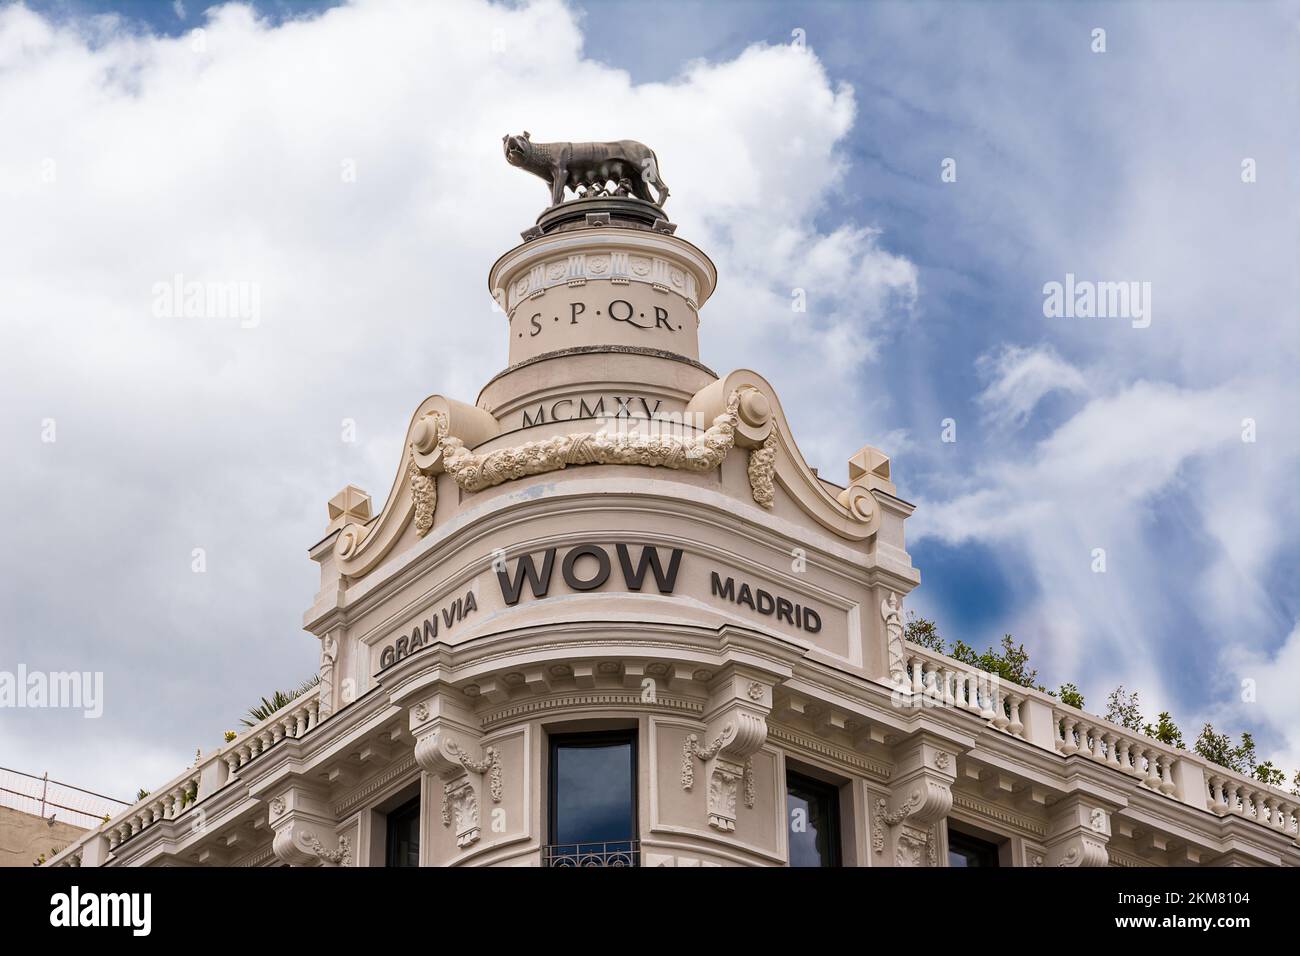 Madrid, España - 20 de junio de 2022: Monumento de la loba de Roma sobre el Hotel Roma a lo largo de la Gran Vía de Madrid Foto de stock